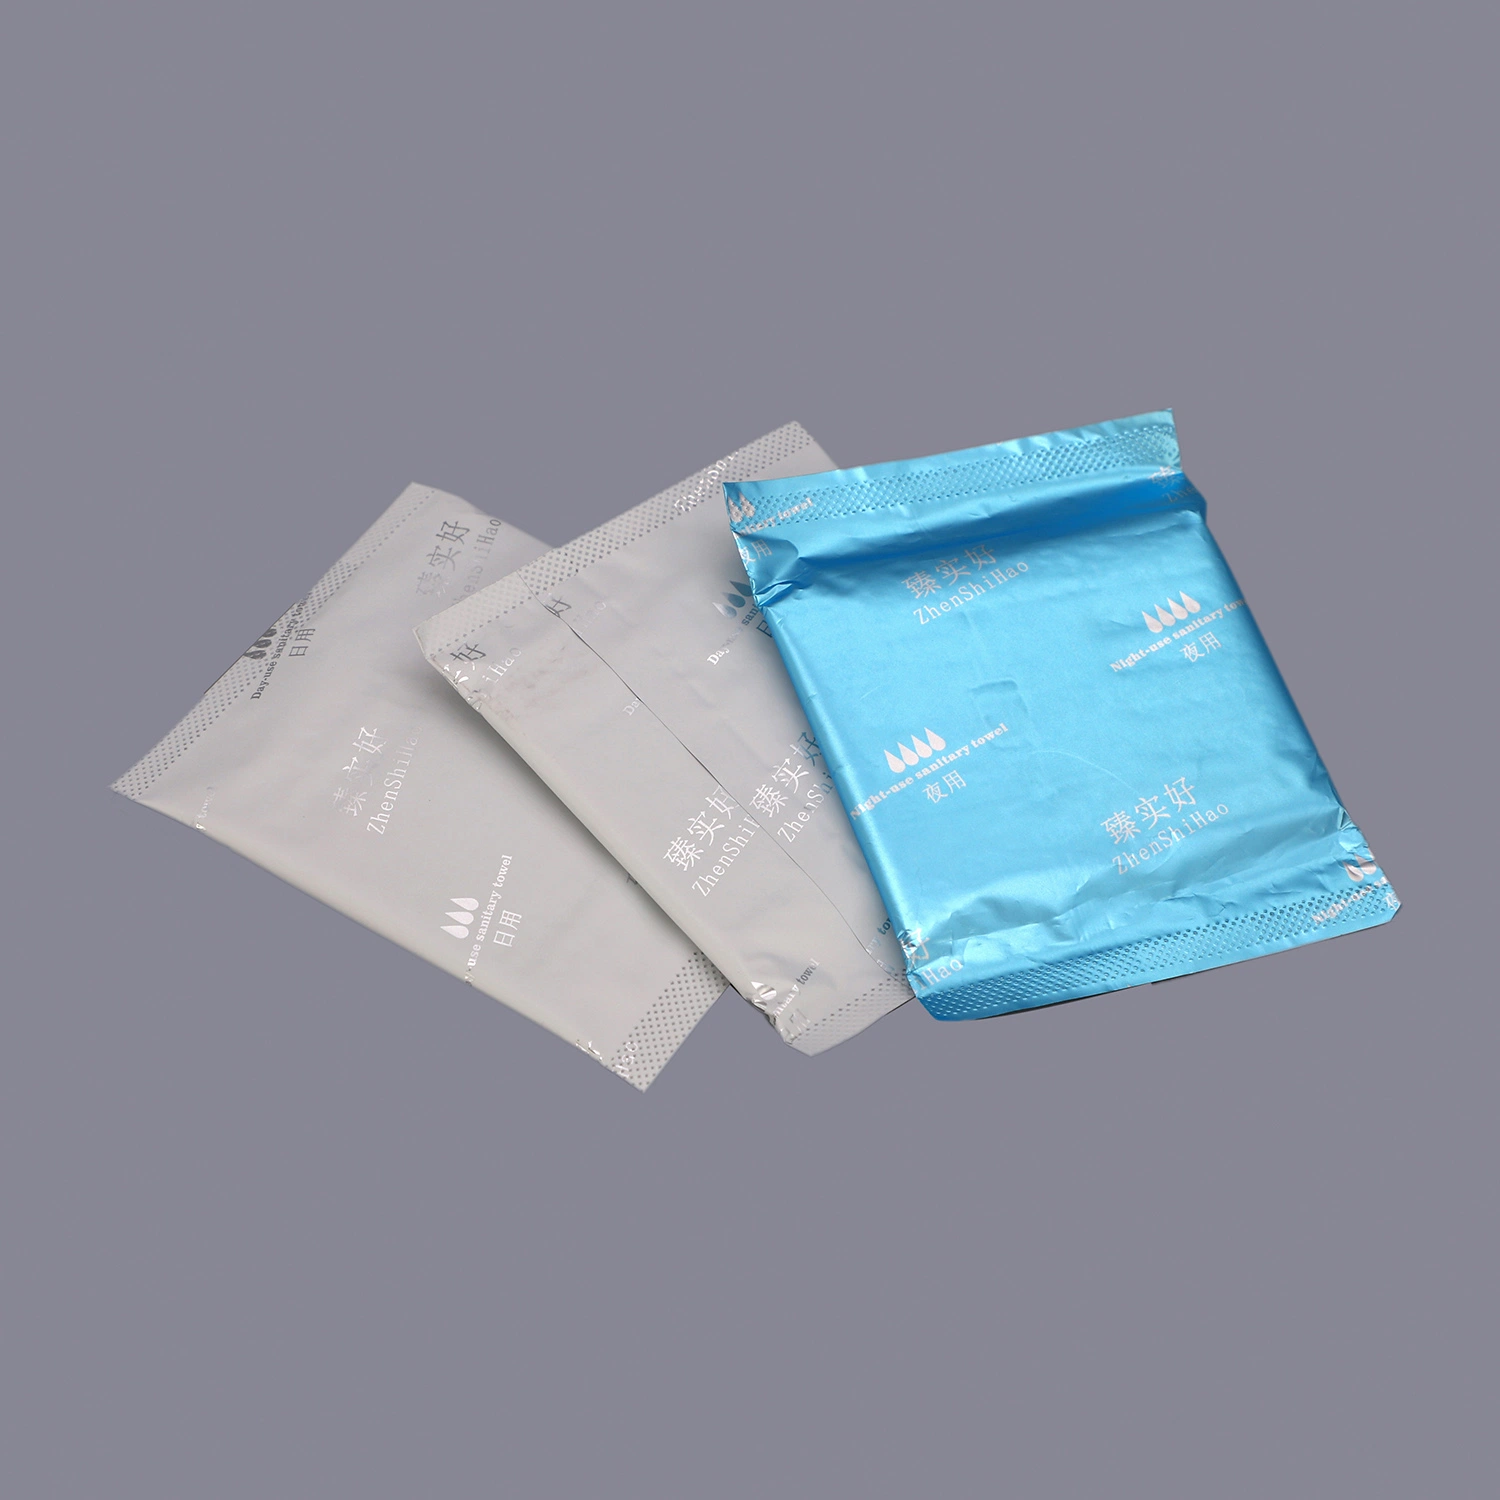 Aluminium Folie Verpackung Sanitär Servietten Anion Sanitär Pads in Bulk Verpackung auf Koreanisch